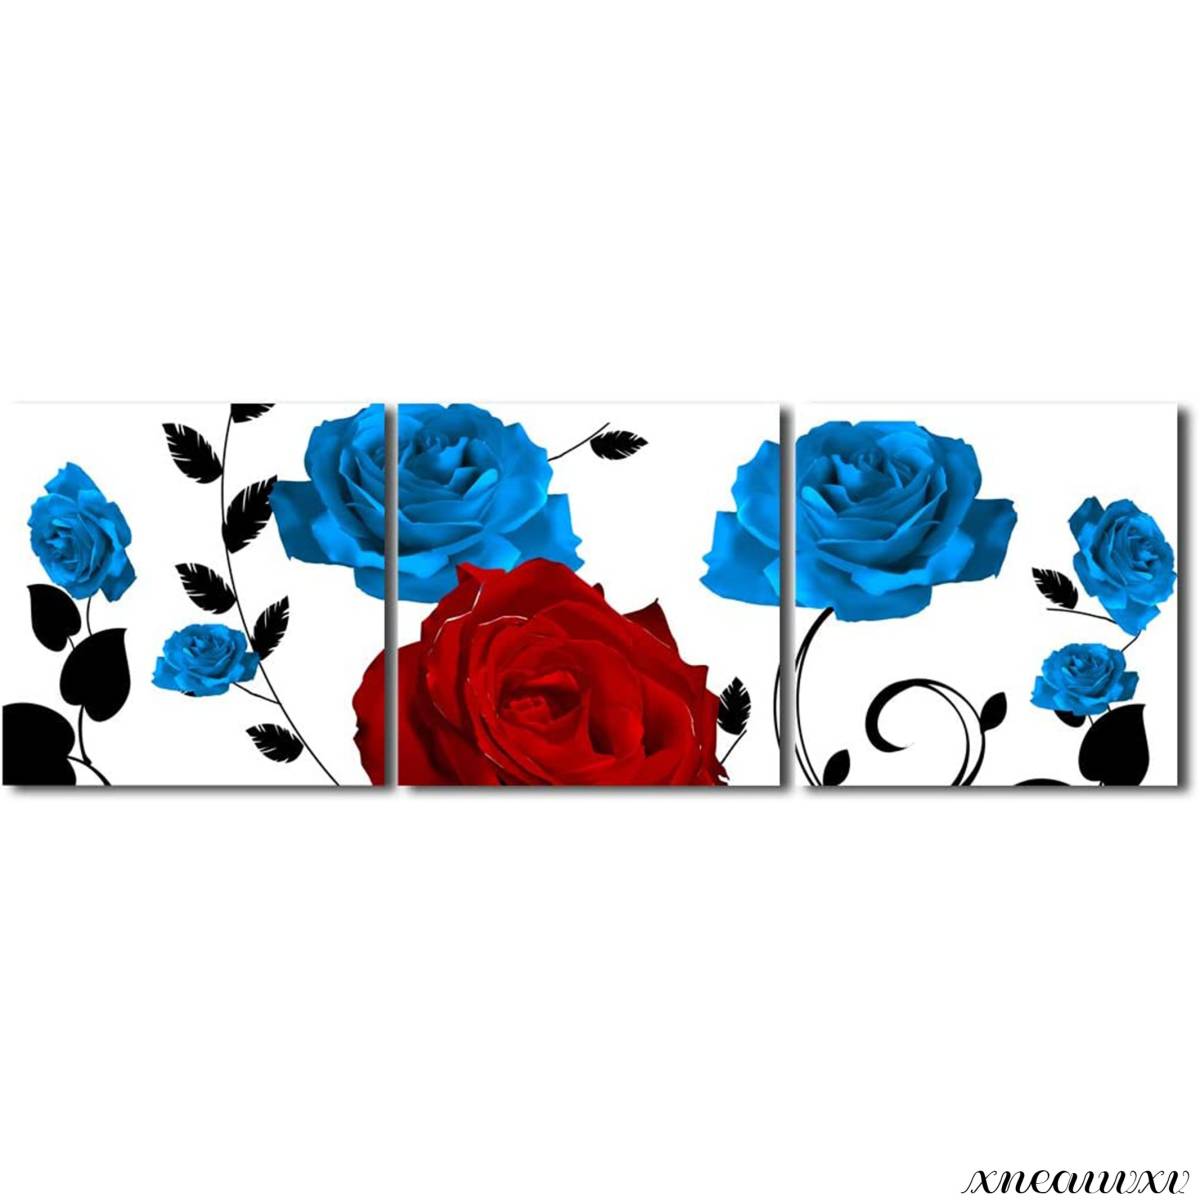 रंगीन 3-टुकड़ा कला पैनल, गुलाब के फूल, आंतरिक भाग, दीवार पर लटकने वाले, कमरे की सजावट, प्रकृति, पुष्प, कैनवास, लकड़ी का फ्रेम, चित्रकारी, स्टाइलिश, दीवार कला, कला, बदलाव, कलाकृति, चित्रकारी, ग्राफ़िक